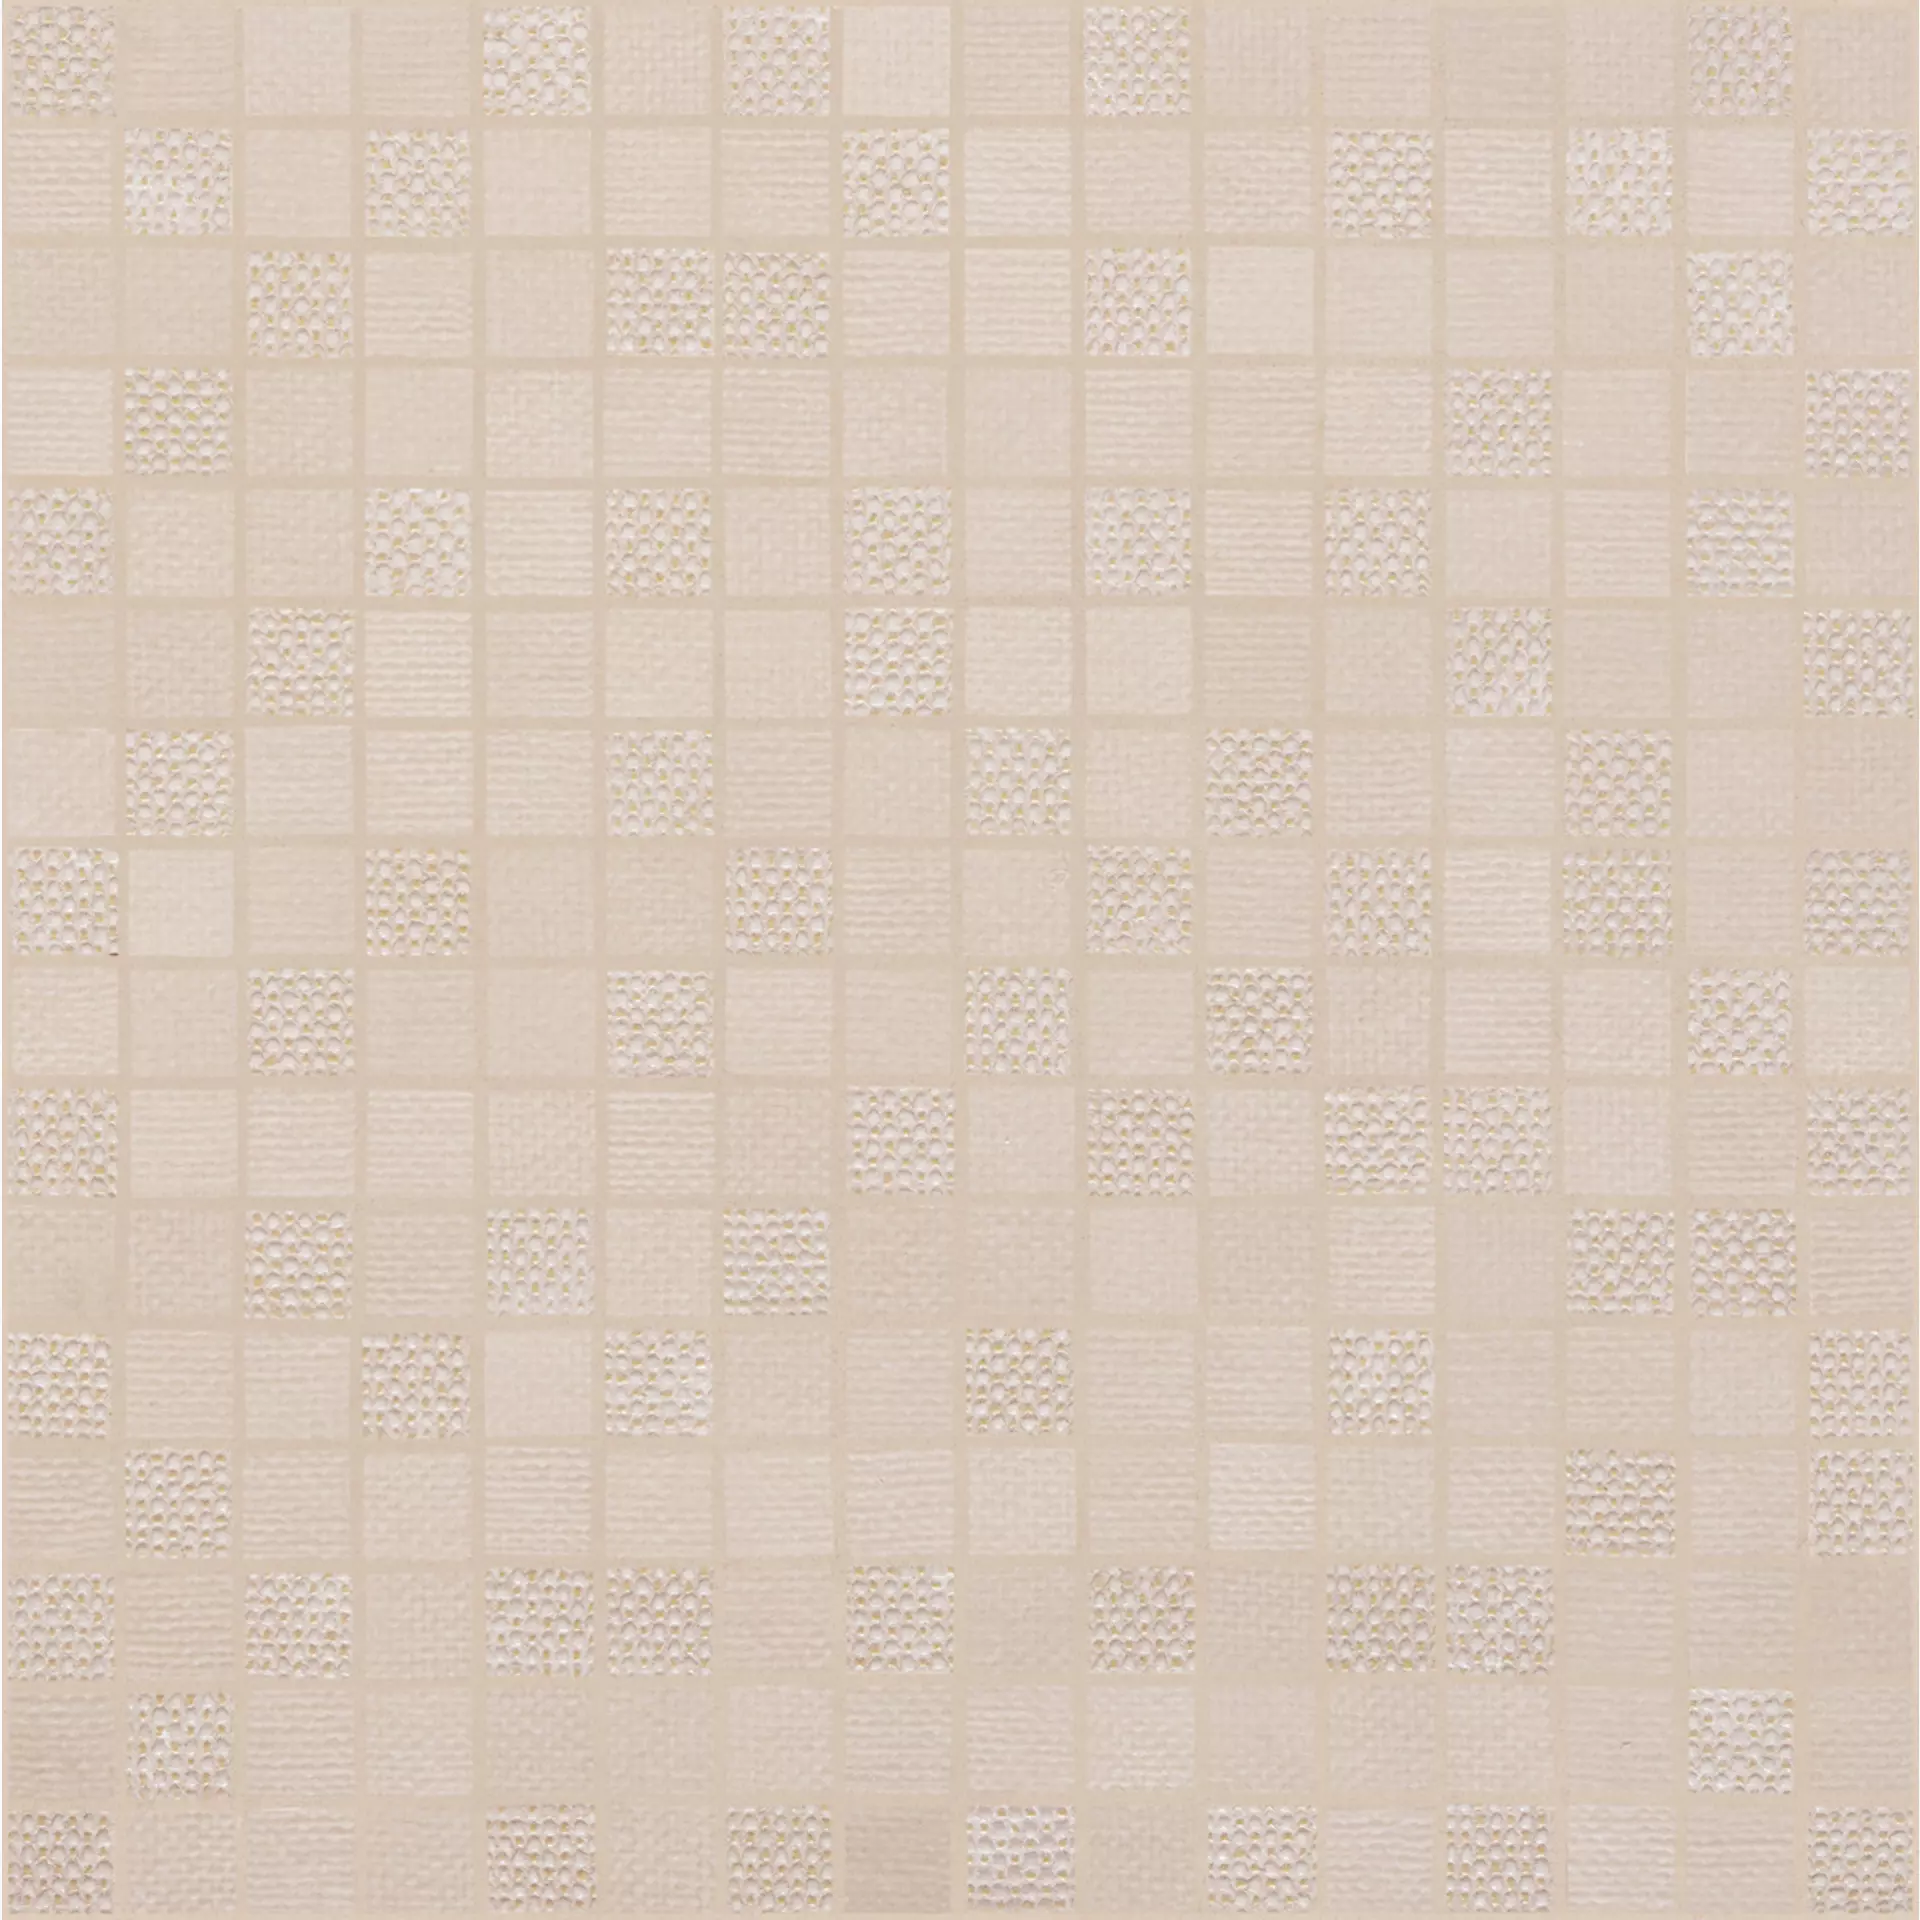 Wandfliese Marazzi Fabric Linen Naturale – Matt Linen MPD5 matt natur 40x40cm Mosaik 6mm